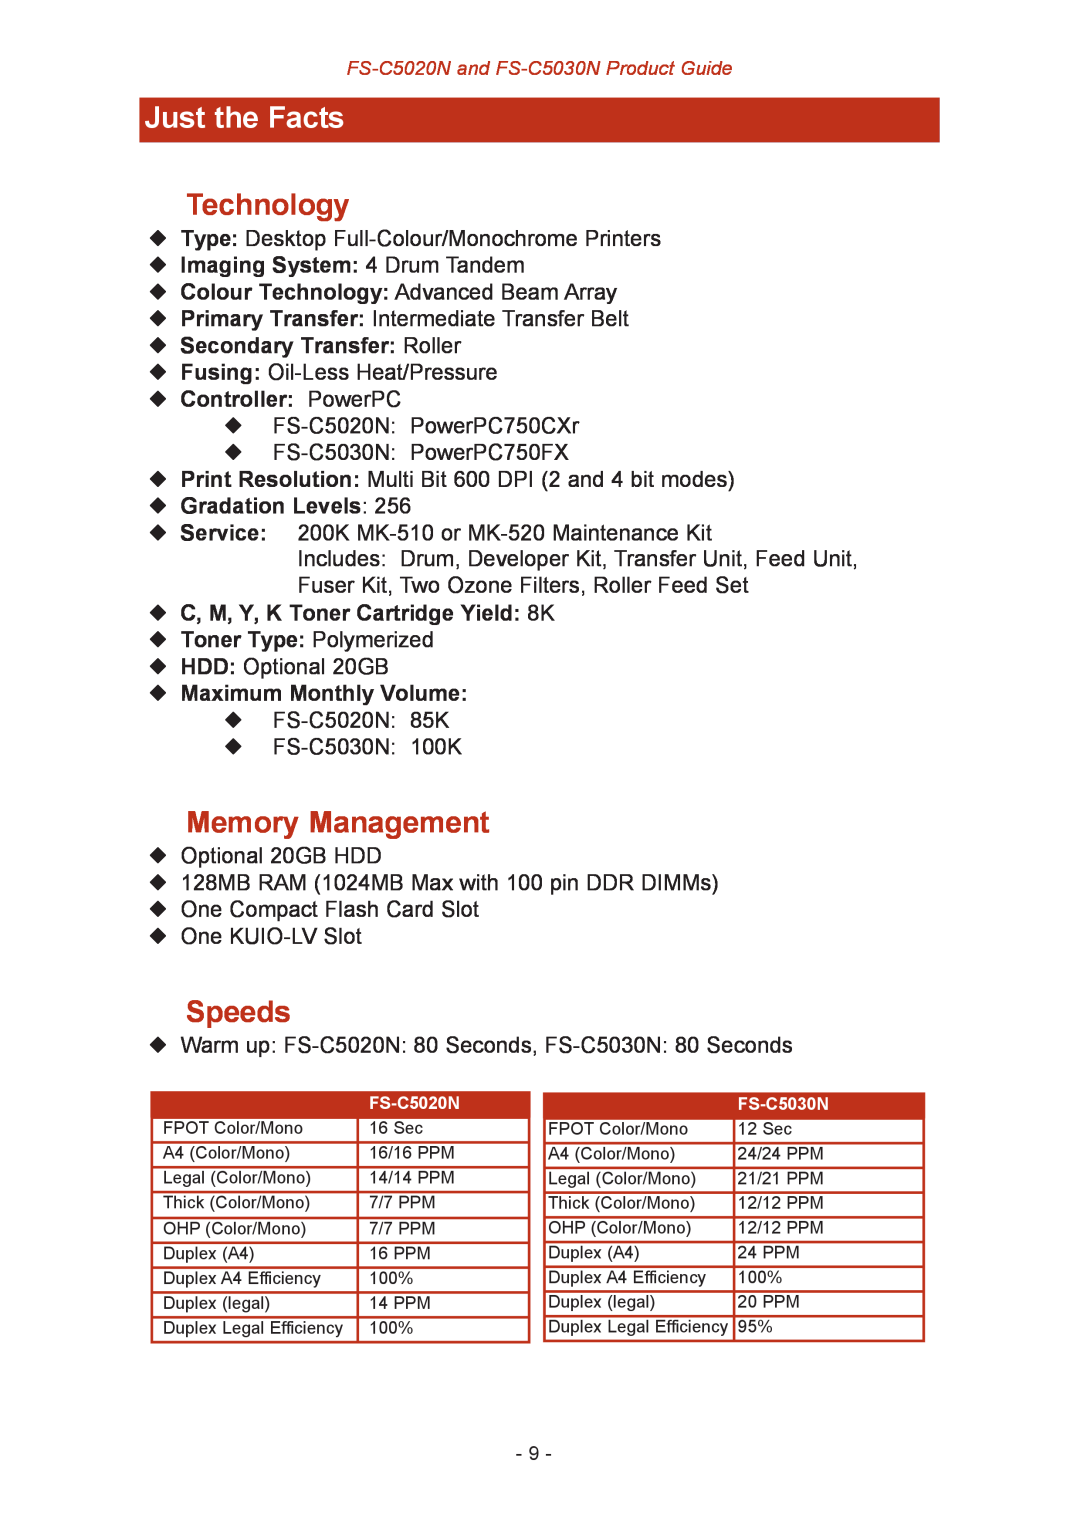 Kyocera FS-C5030N, FS-C5020N JustFS-C5016Nthe Facts, Technology, Memory Management, Speeds, ¡ Imaging System 4 Drum Tandem 